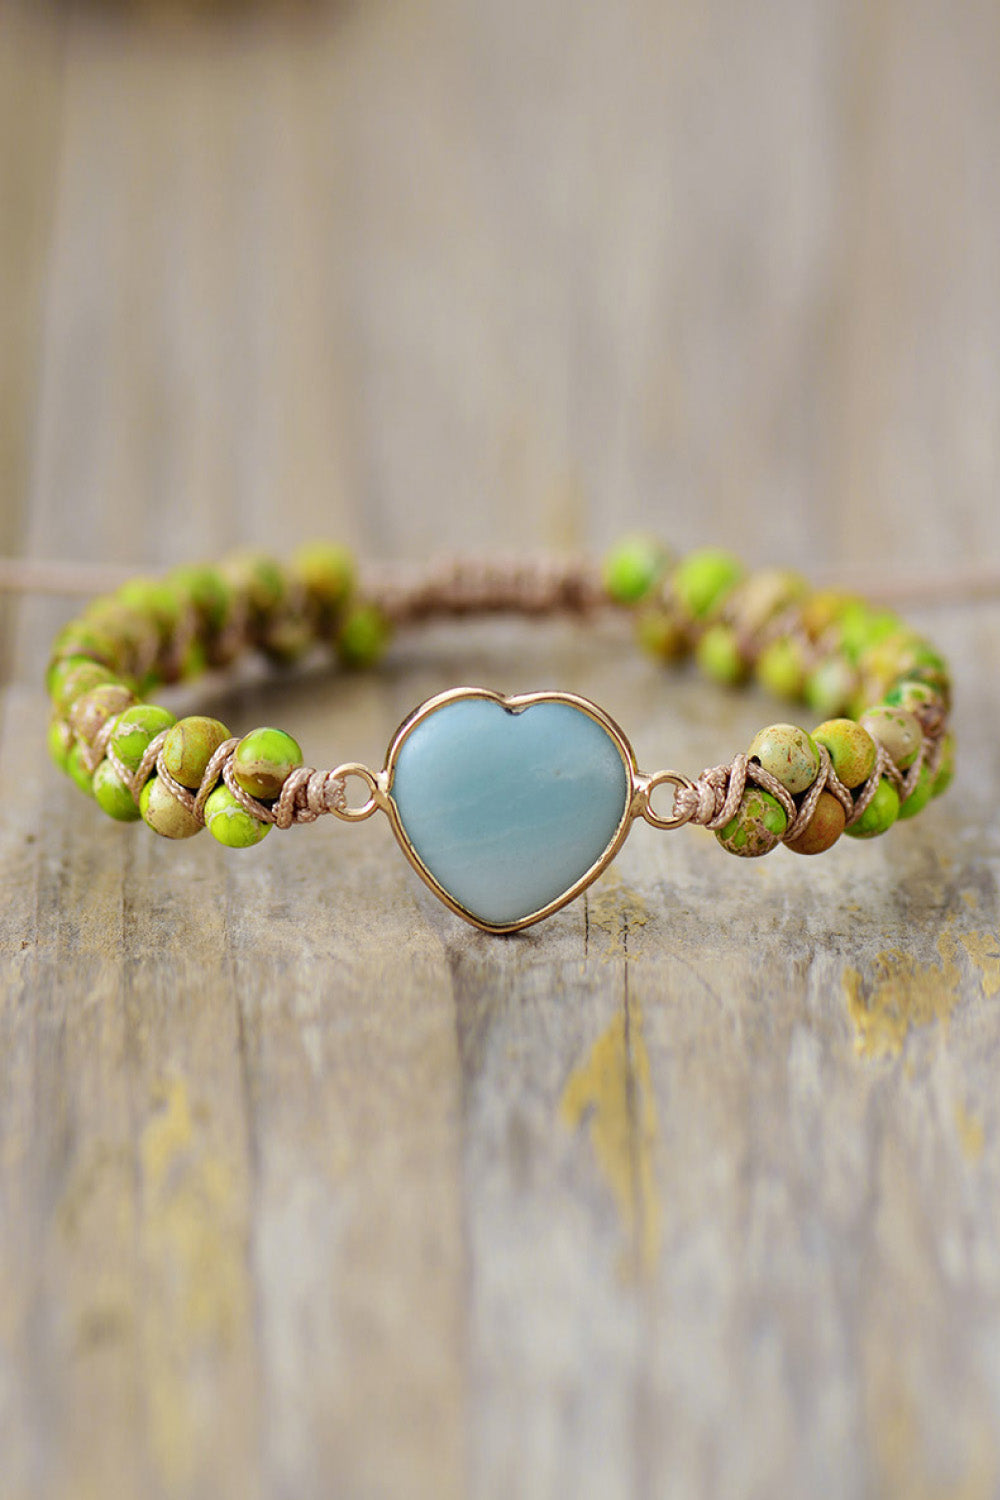 Handmade Heart Shape Natural Stone Bracelet - Green / One Size - Women’s Jewelry - Bracelets - 14 - 2024